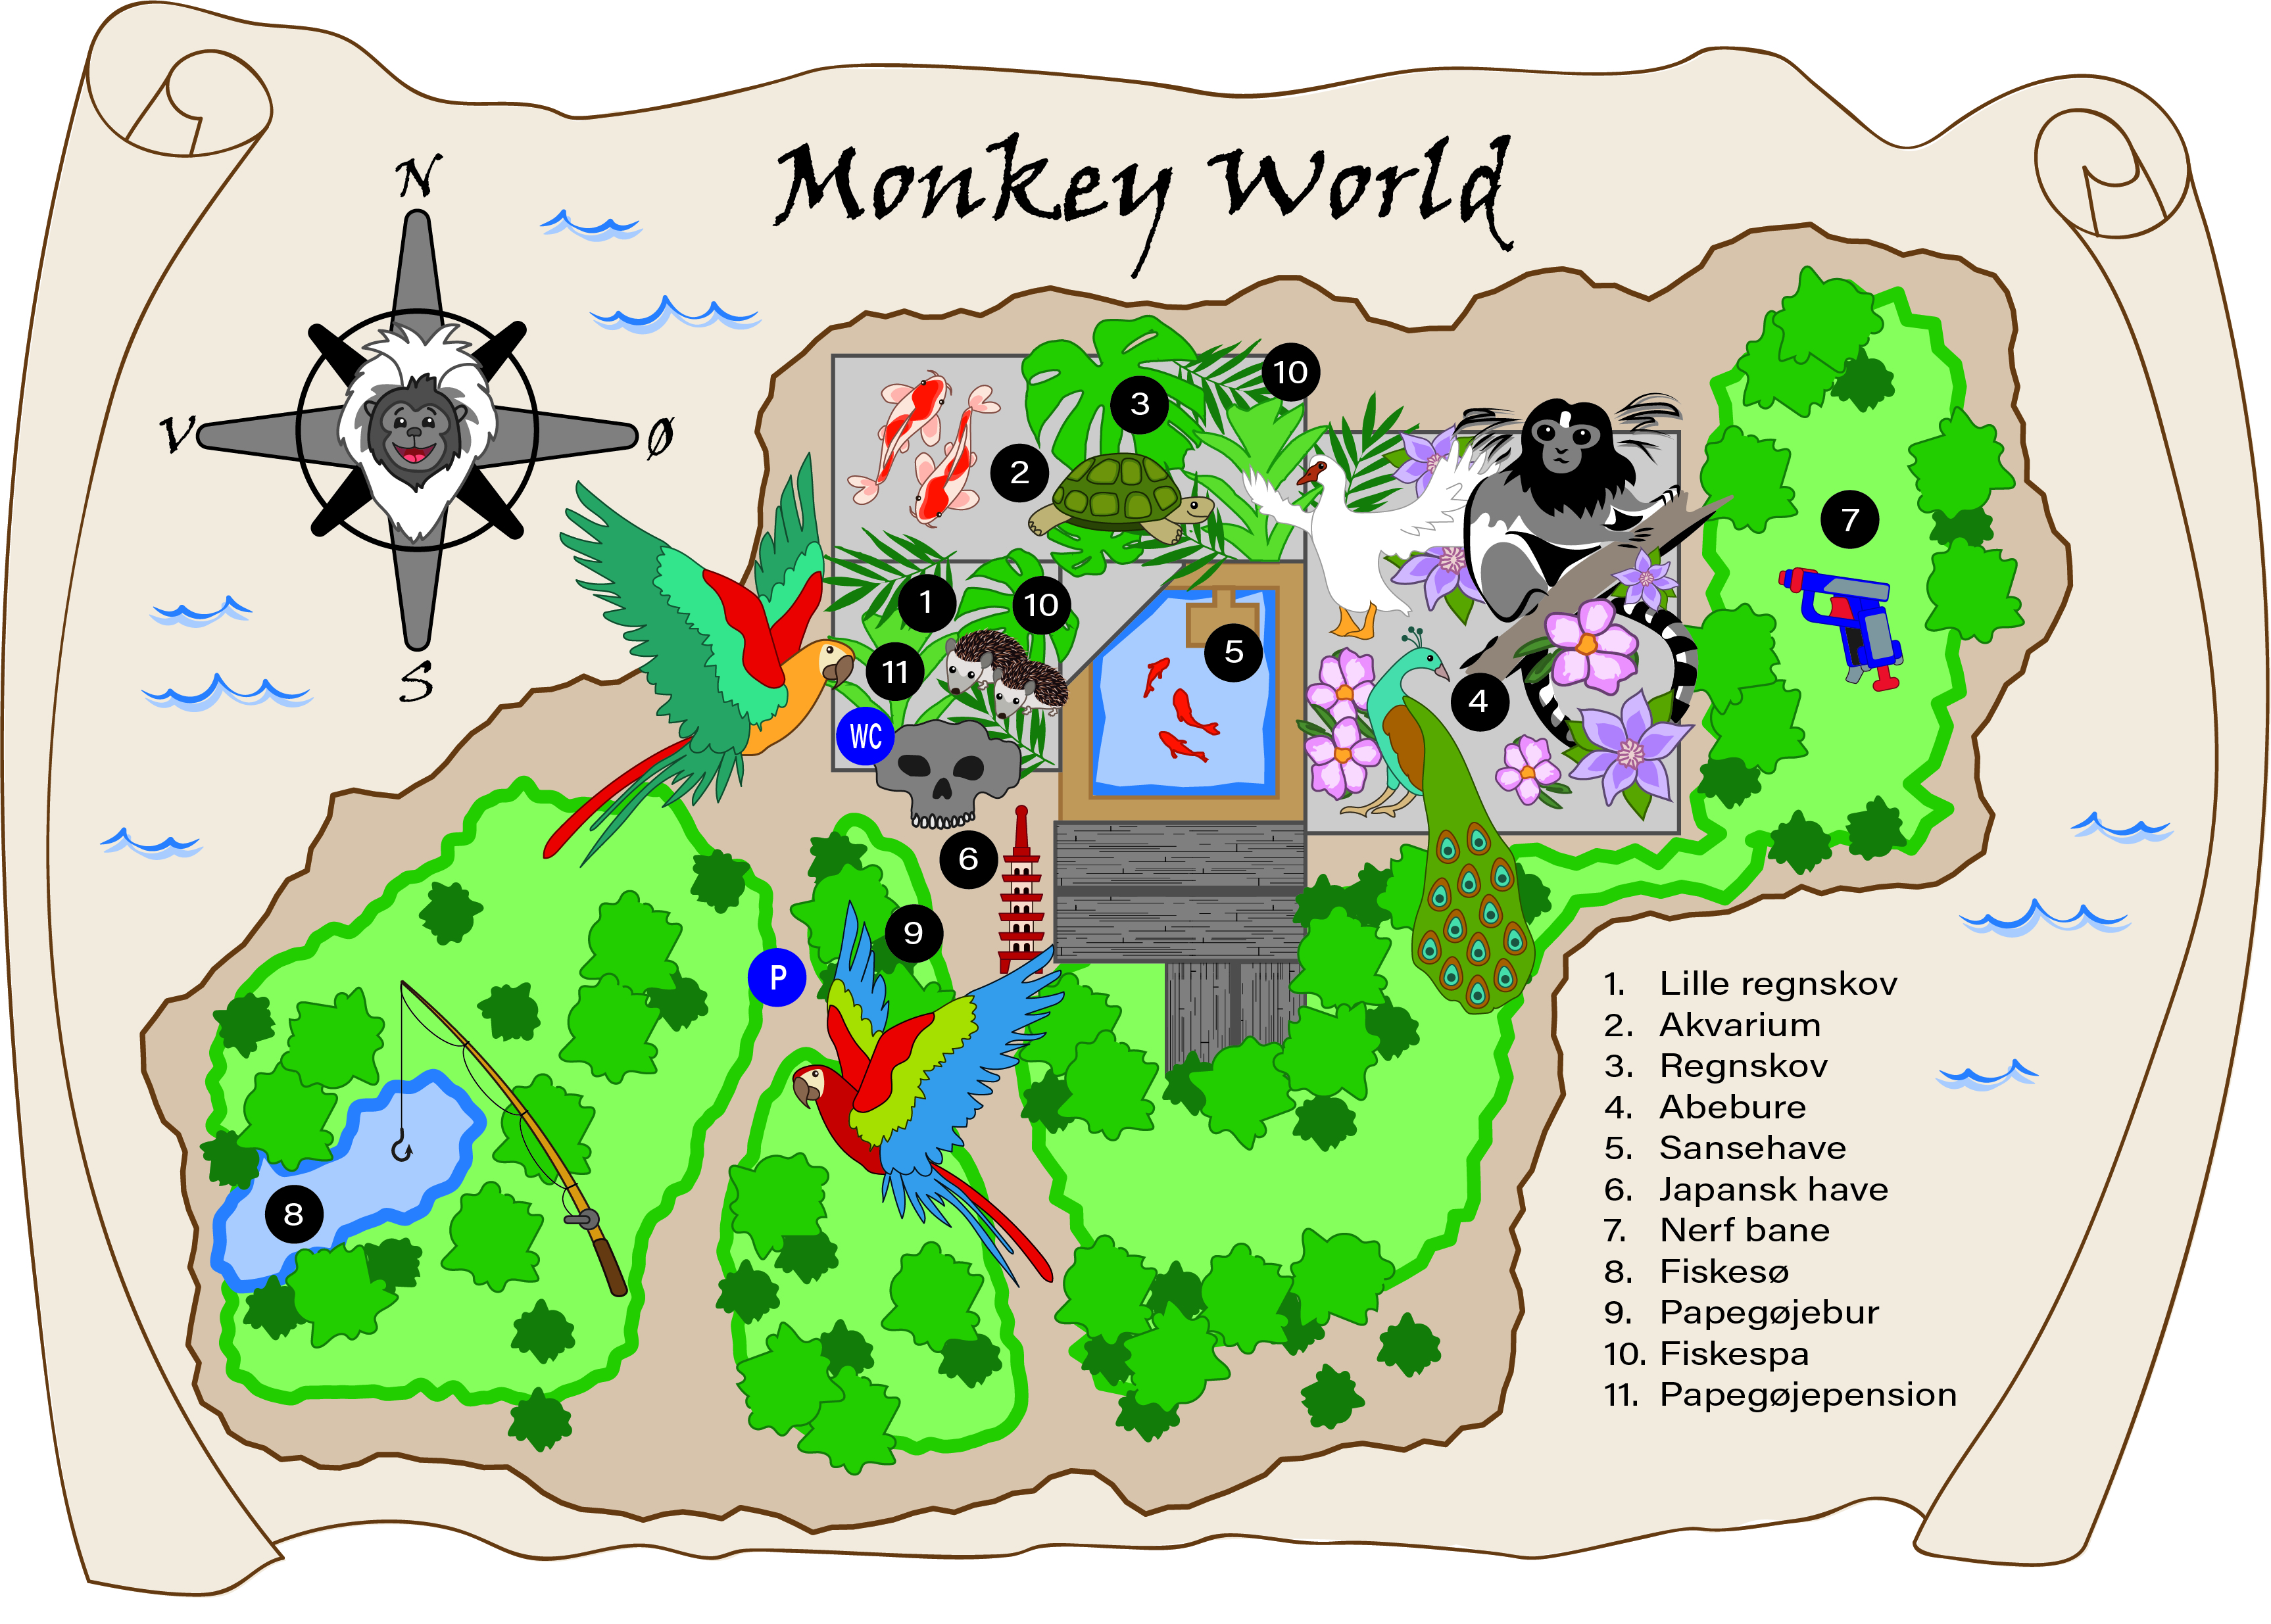 Monkey World er åben lørdag og søndag fra 11-15:00